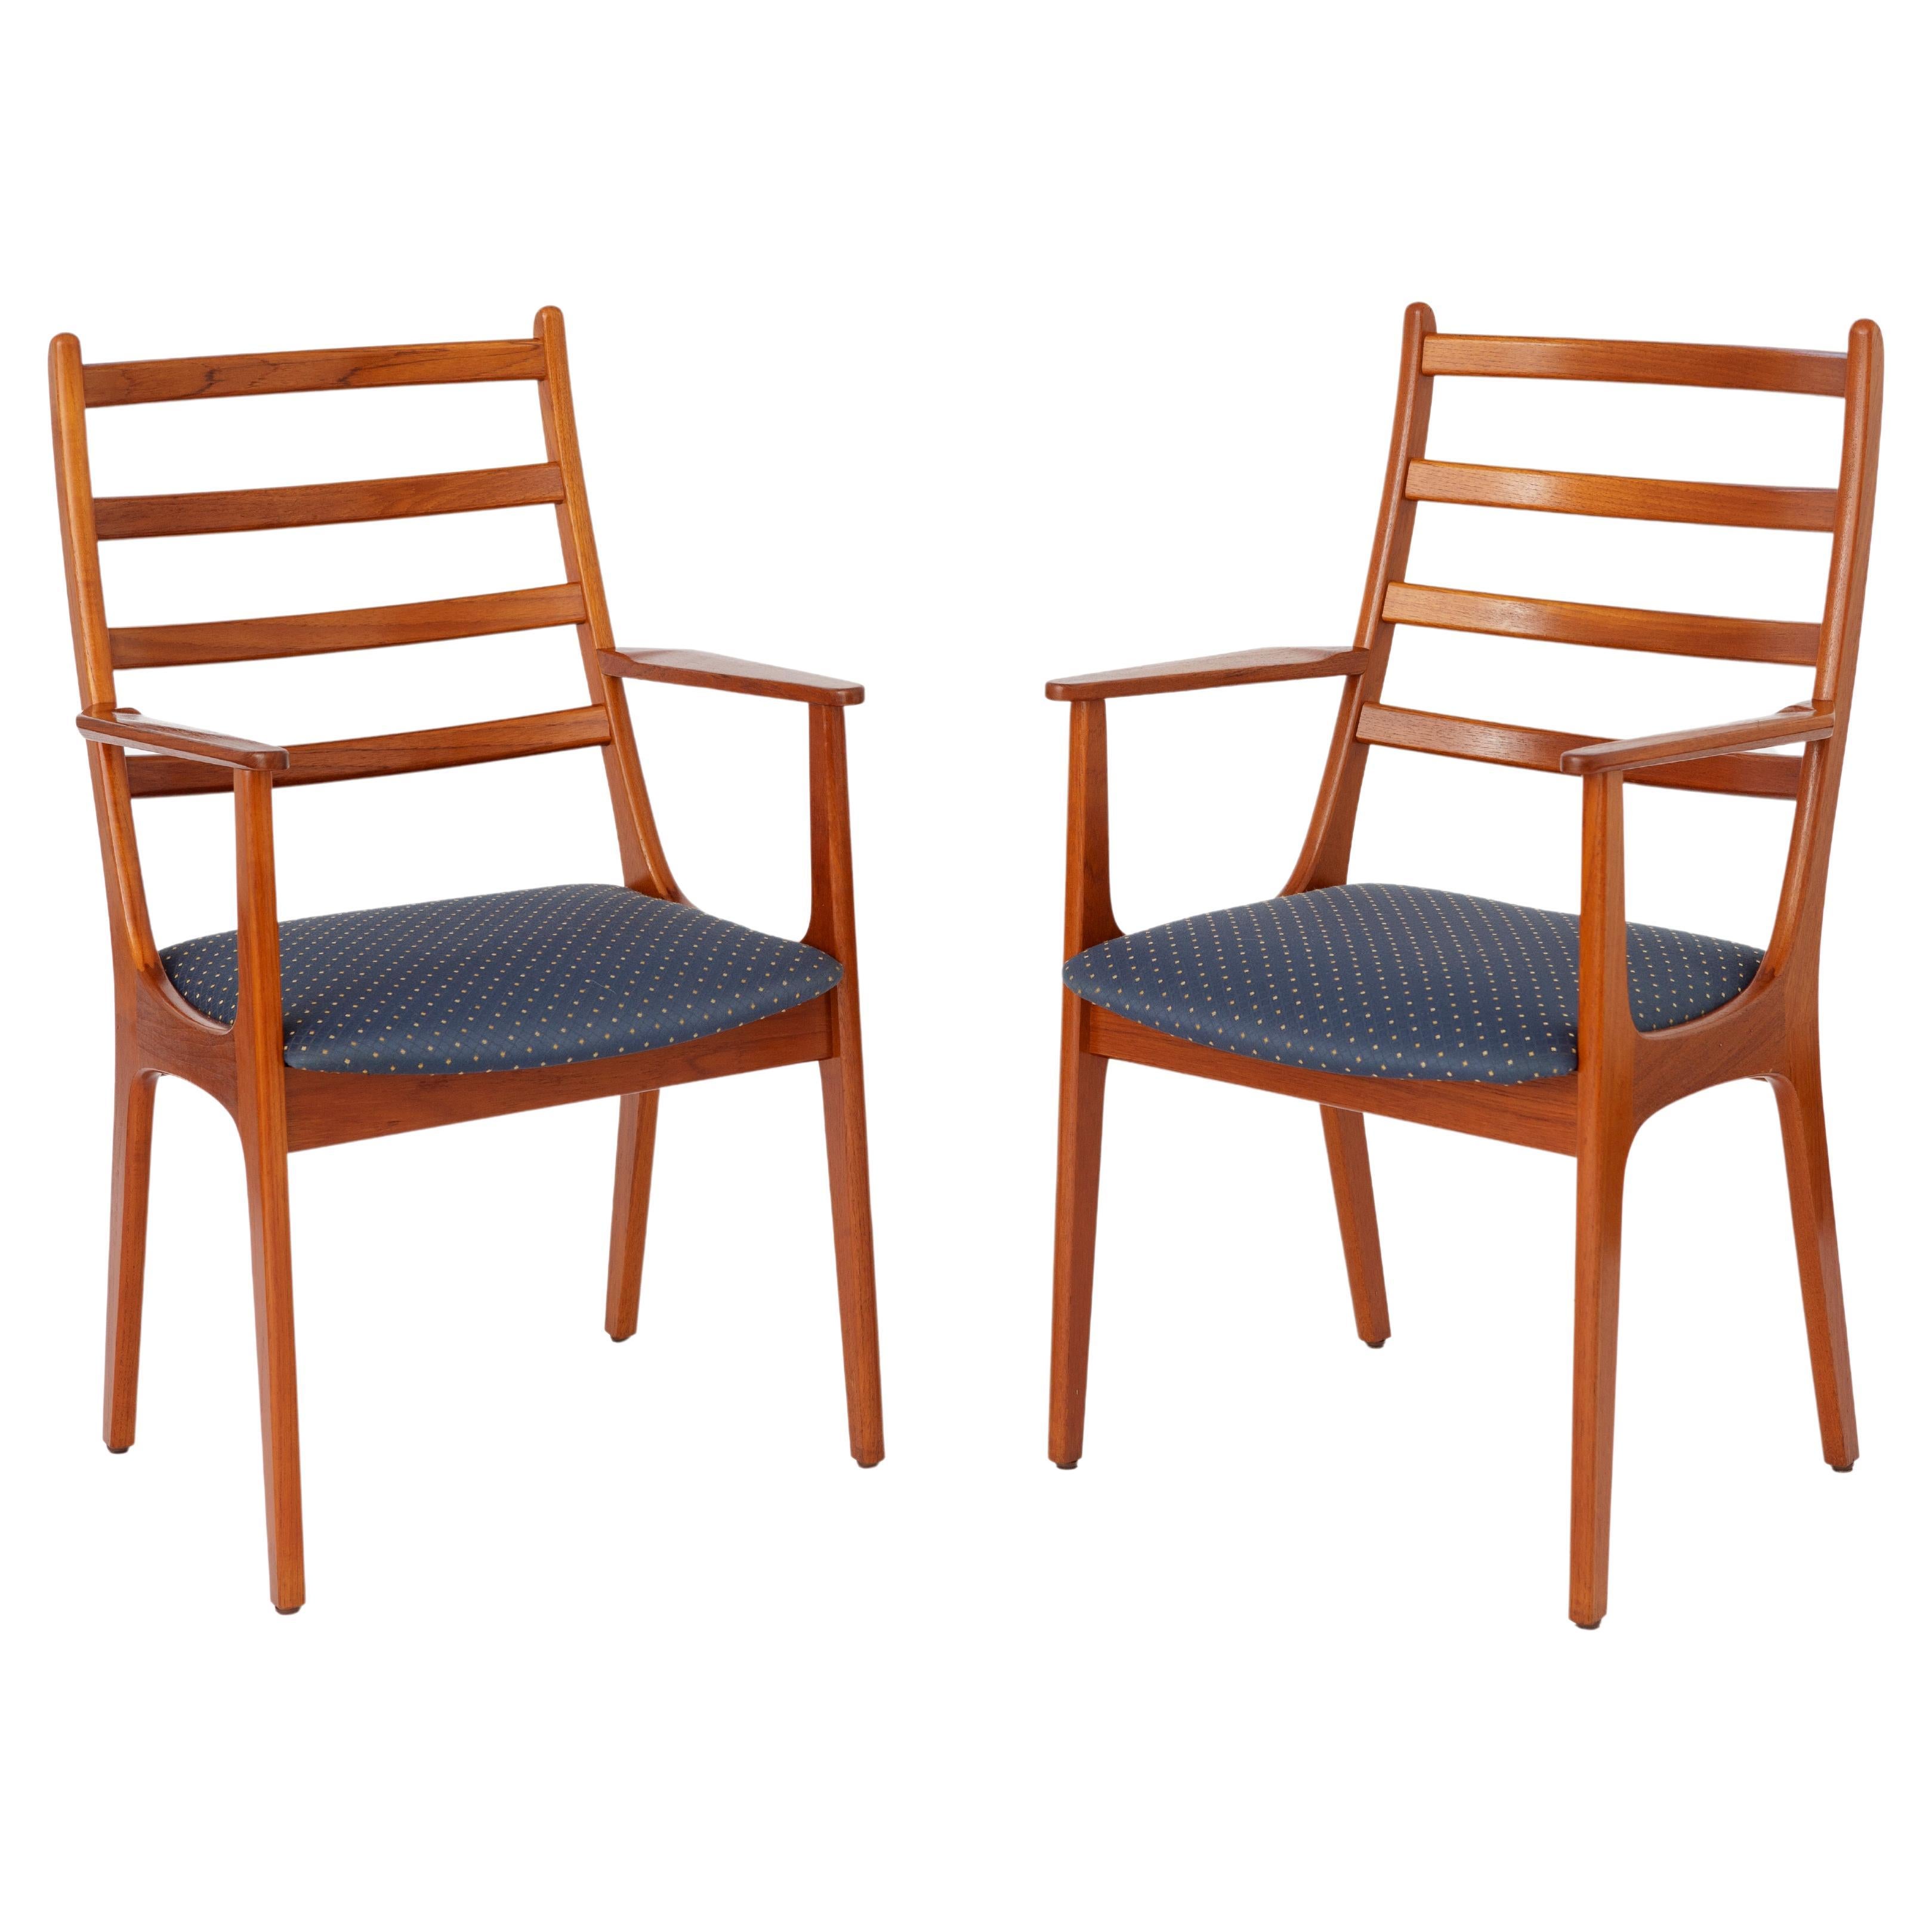 2 Teak Dining chairs 1960s by KS Mobler, Denmark